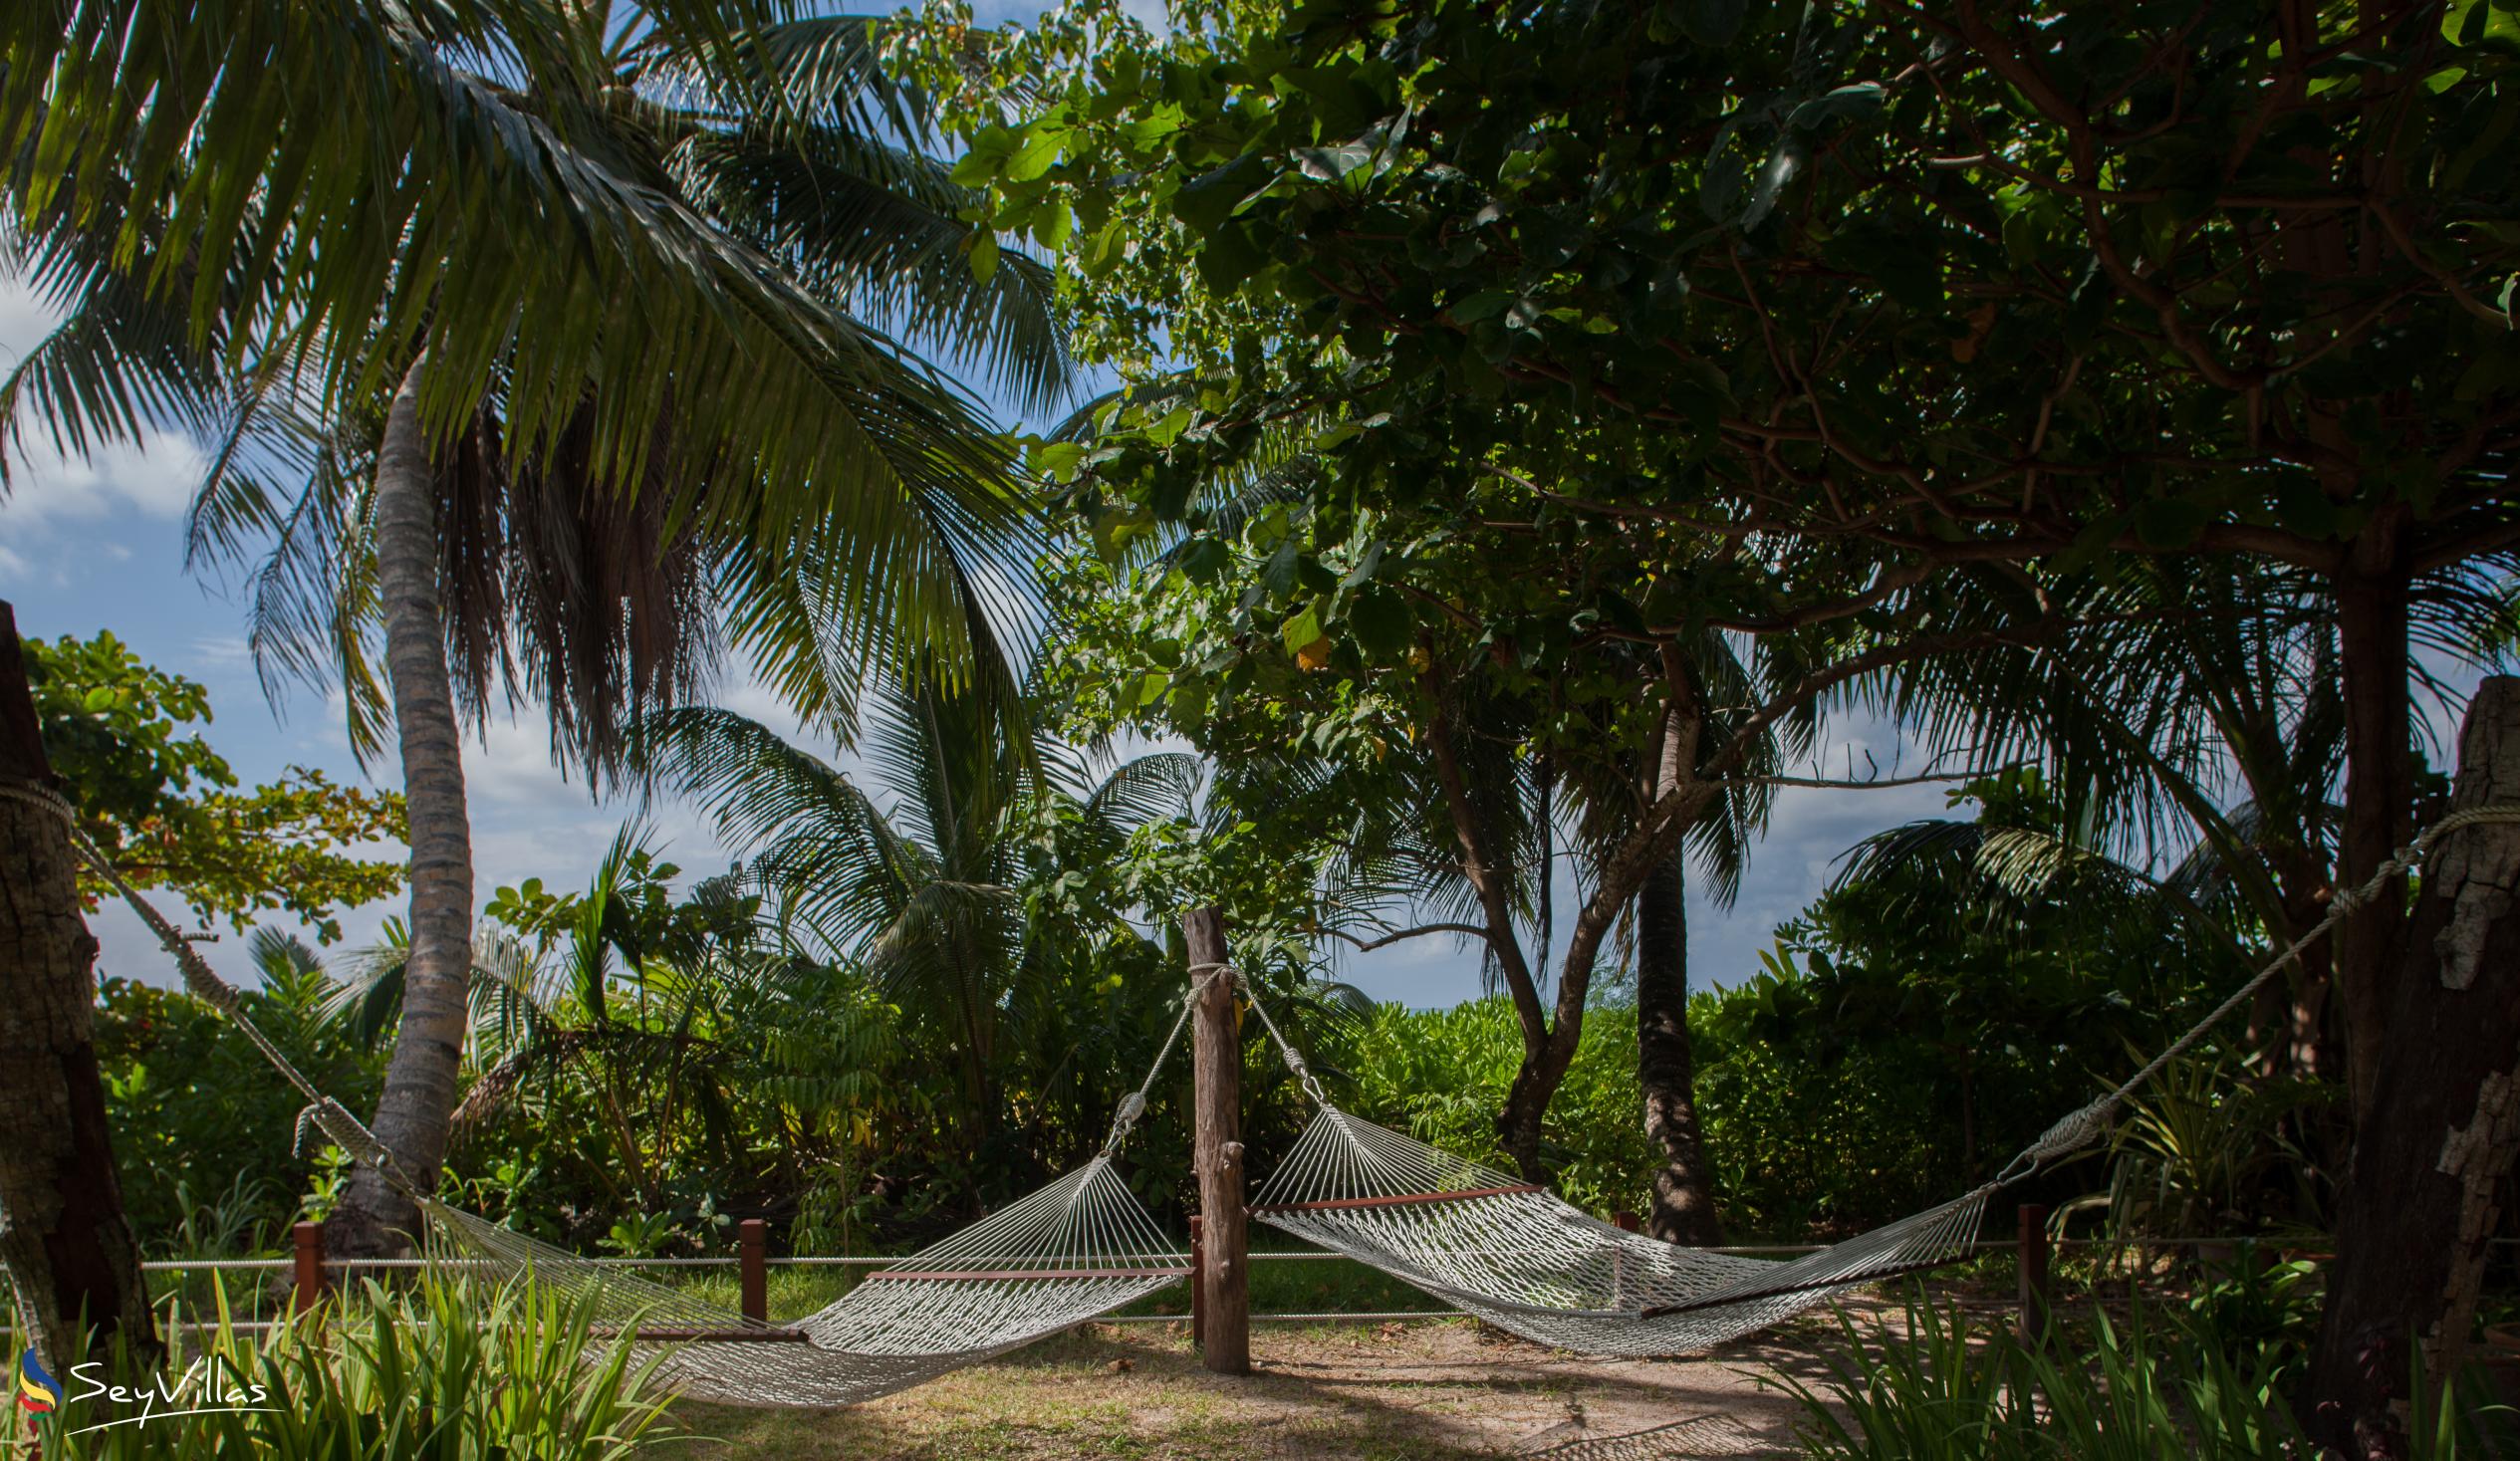 Foto 17: Dhevatara Beach Hotel - Aussenbereich - Praslin (Seychellen)